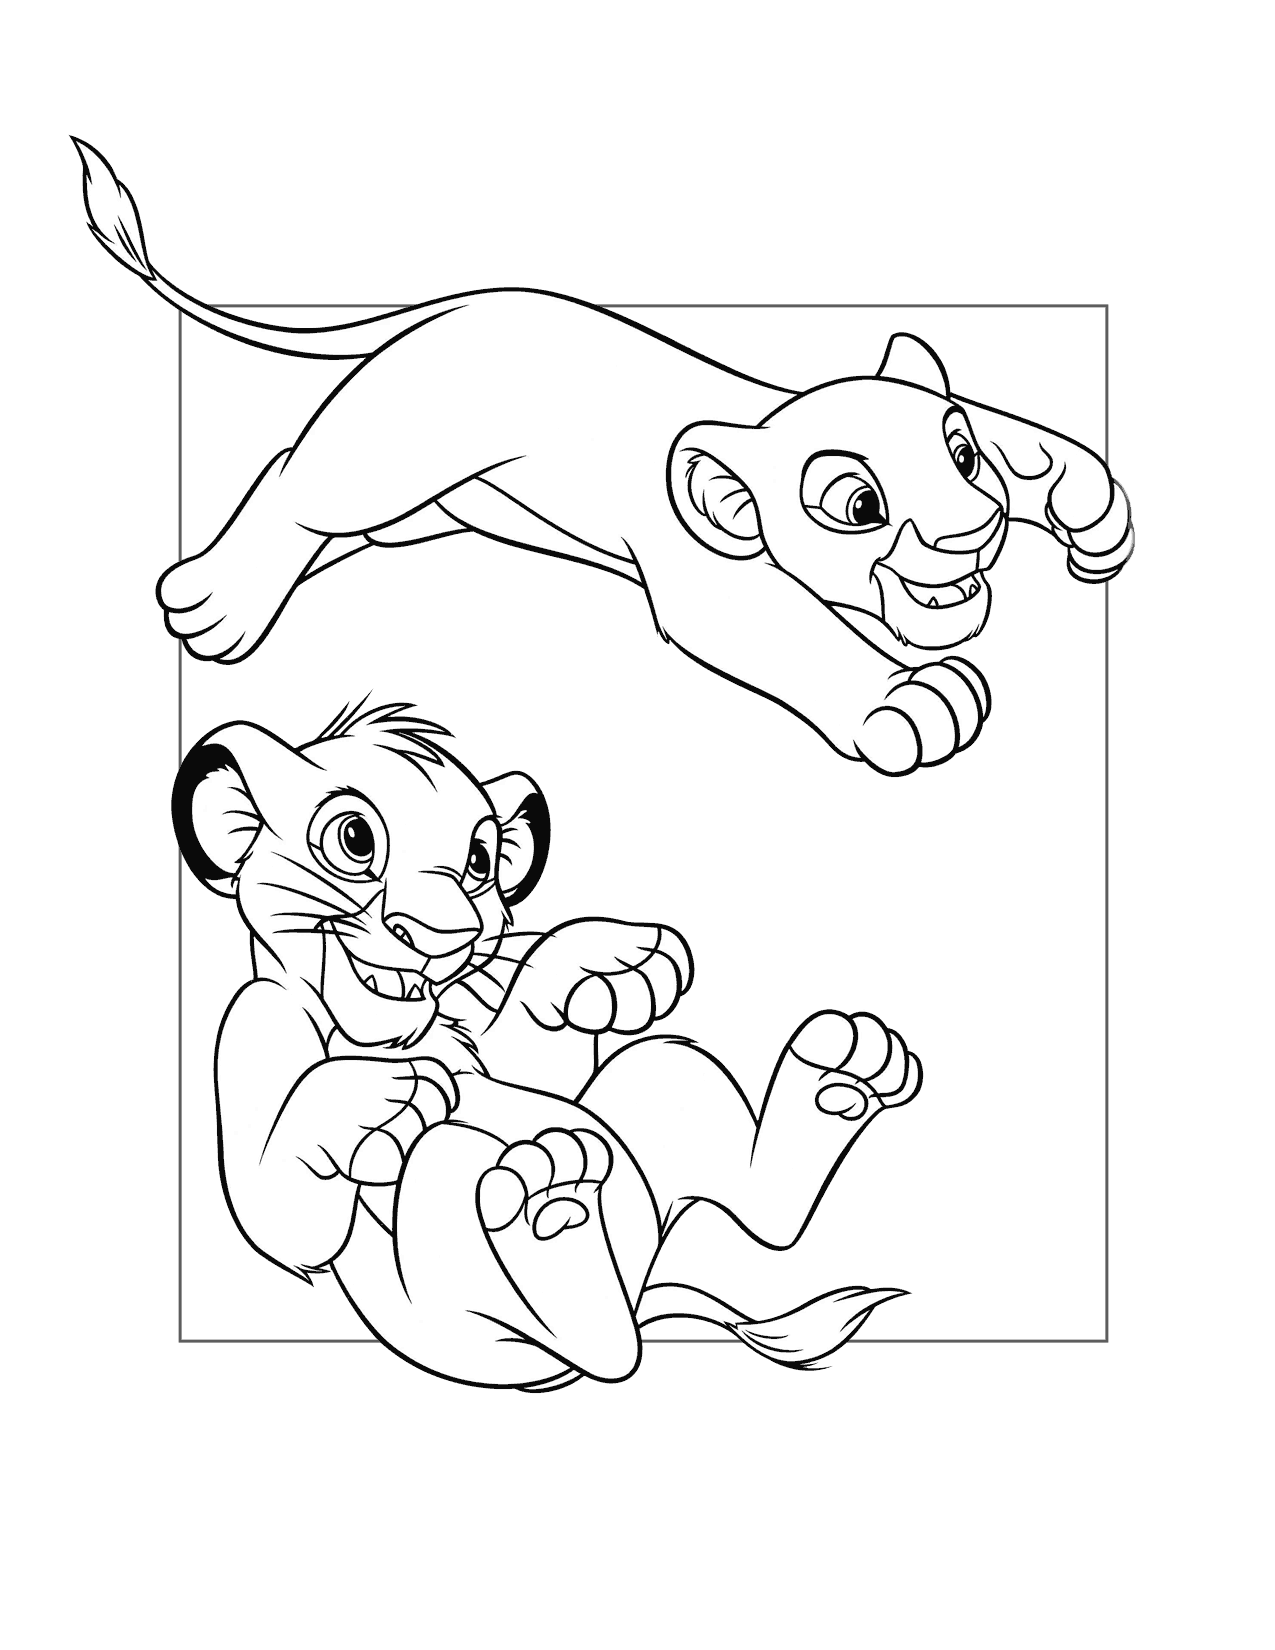 Simba And Nala Play Coloring Page